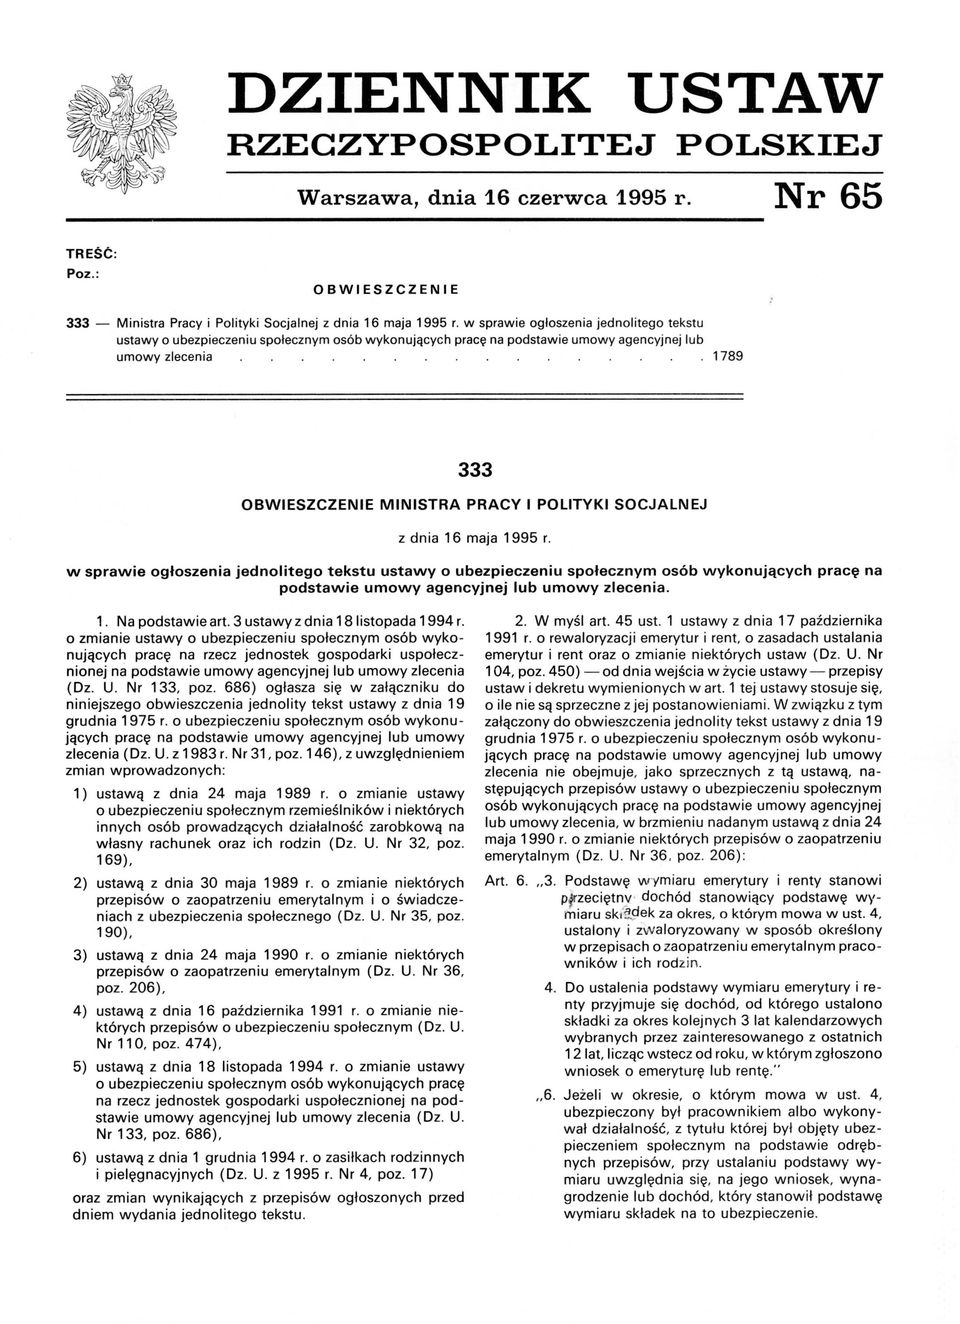 SOCJALNEJ z dnia 16 maja 1995 r. w sprawie ogłoszenia jednolitego tekstu ustawy o ubezpieczeniu społecznym osób wykonujących pracę na podstawie umowy agencyjnej lub umowy zlecenia. 1. Na podstawie art.